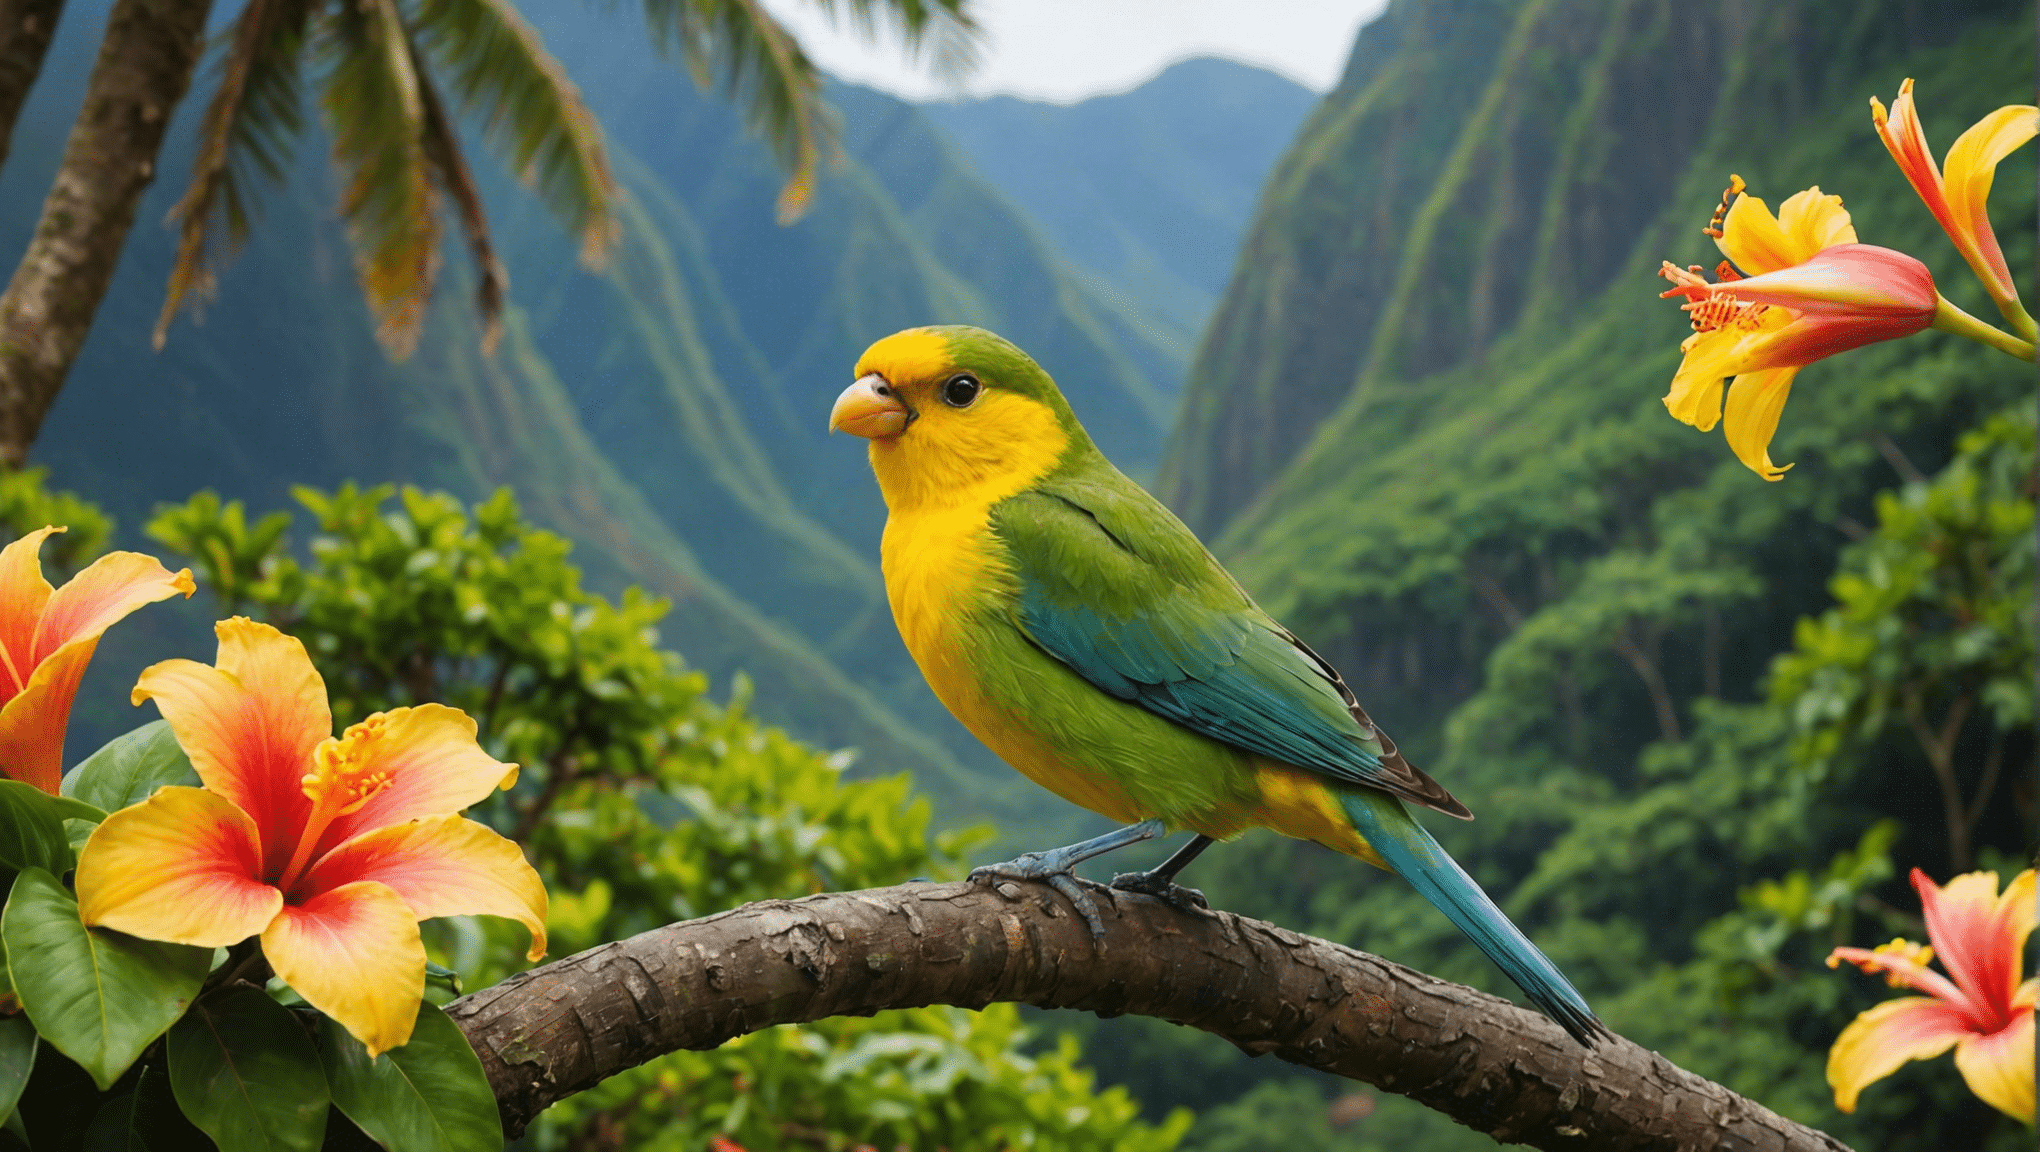 upptäck Hawaiis distinkta fågelarter och deras fascinerande egenskaper. utforska den unika fågelfaunan på detta paradisö.